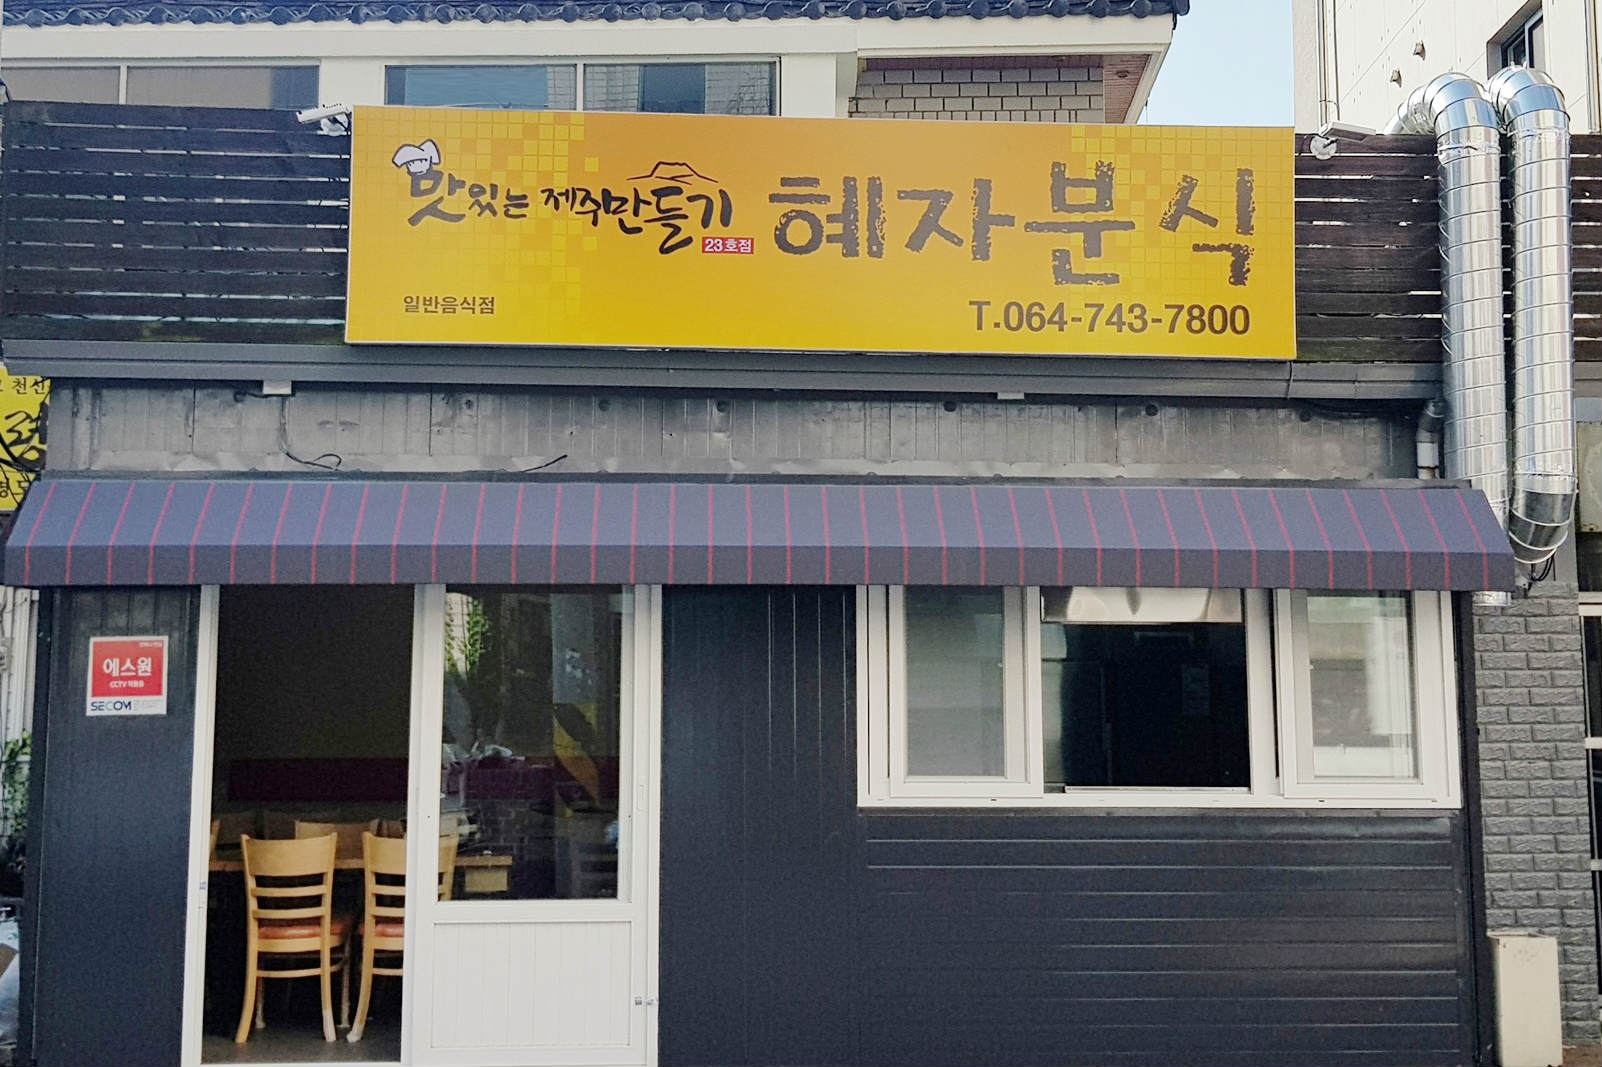 호텔신라, ‘맛있는 제주 만들기’ 23호점 열어 영세자영업자 지원